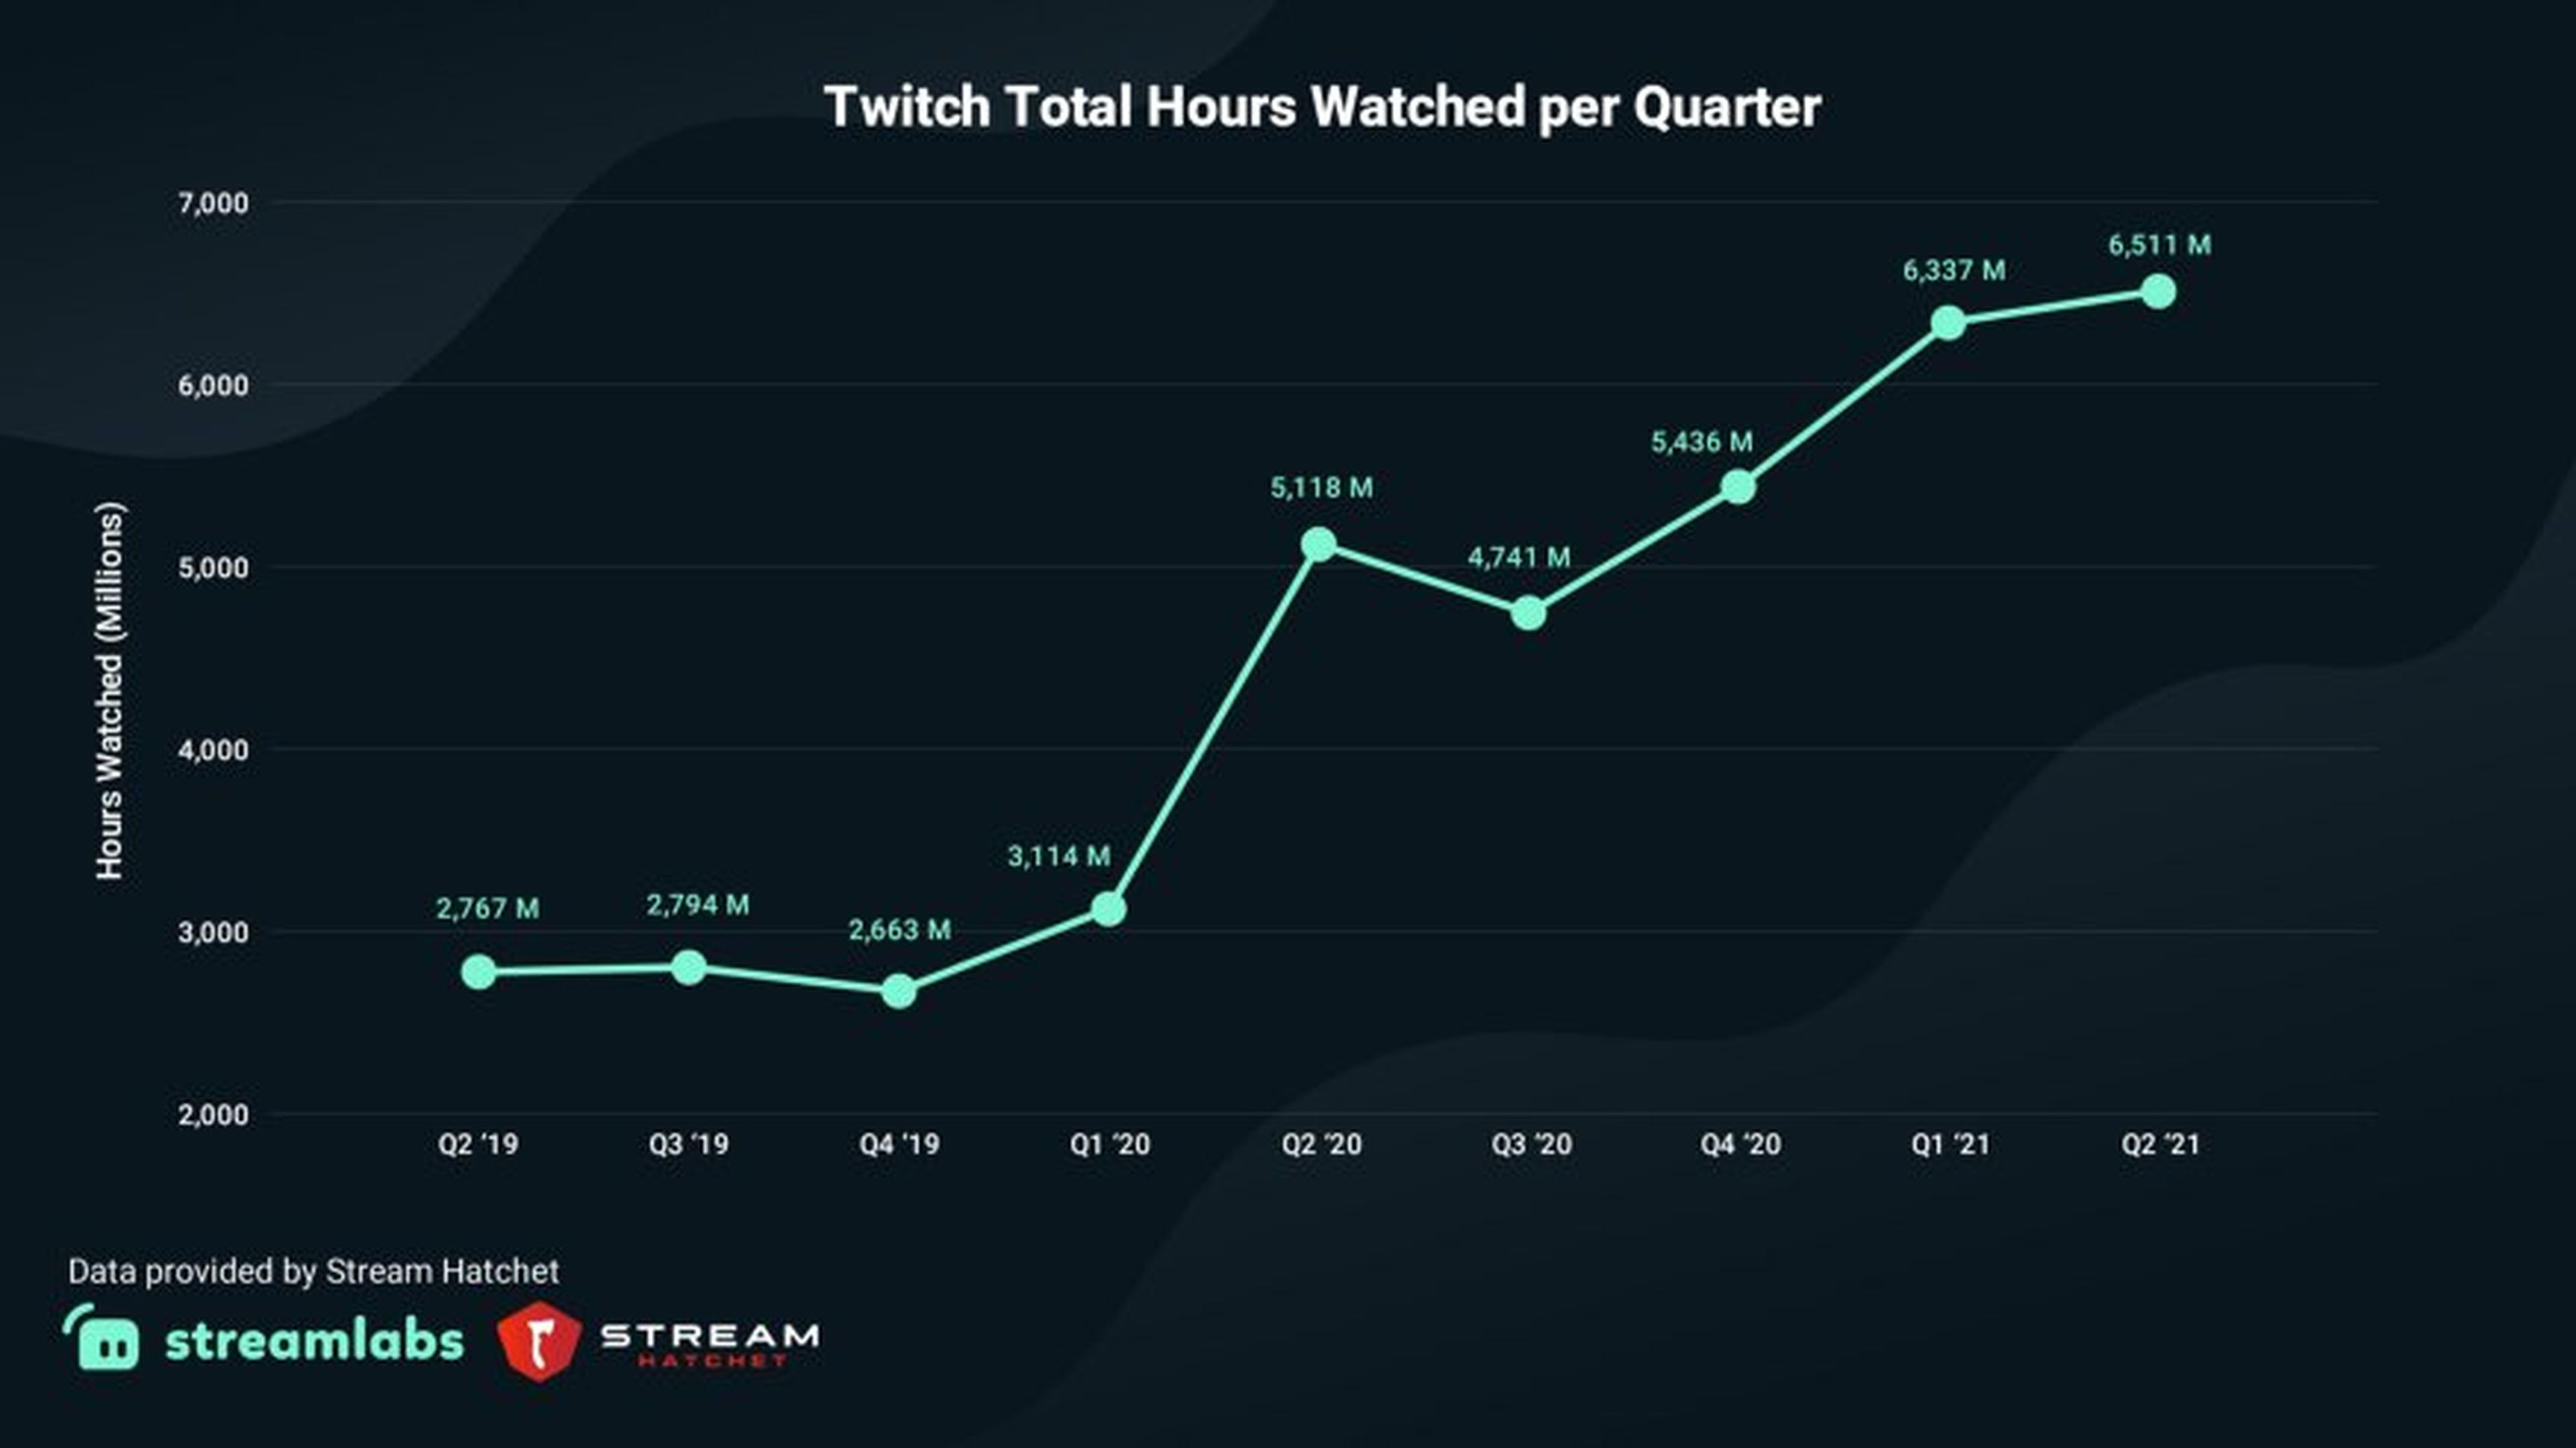 Evolución del número de horas totales vistas en Twitch, por trimestre, a nivel mundial.